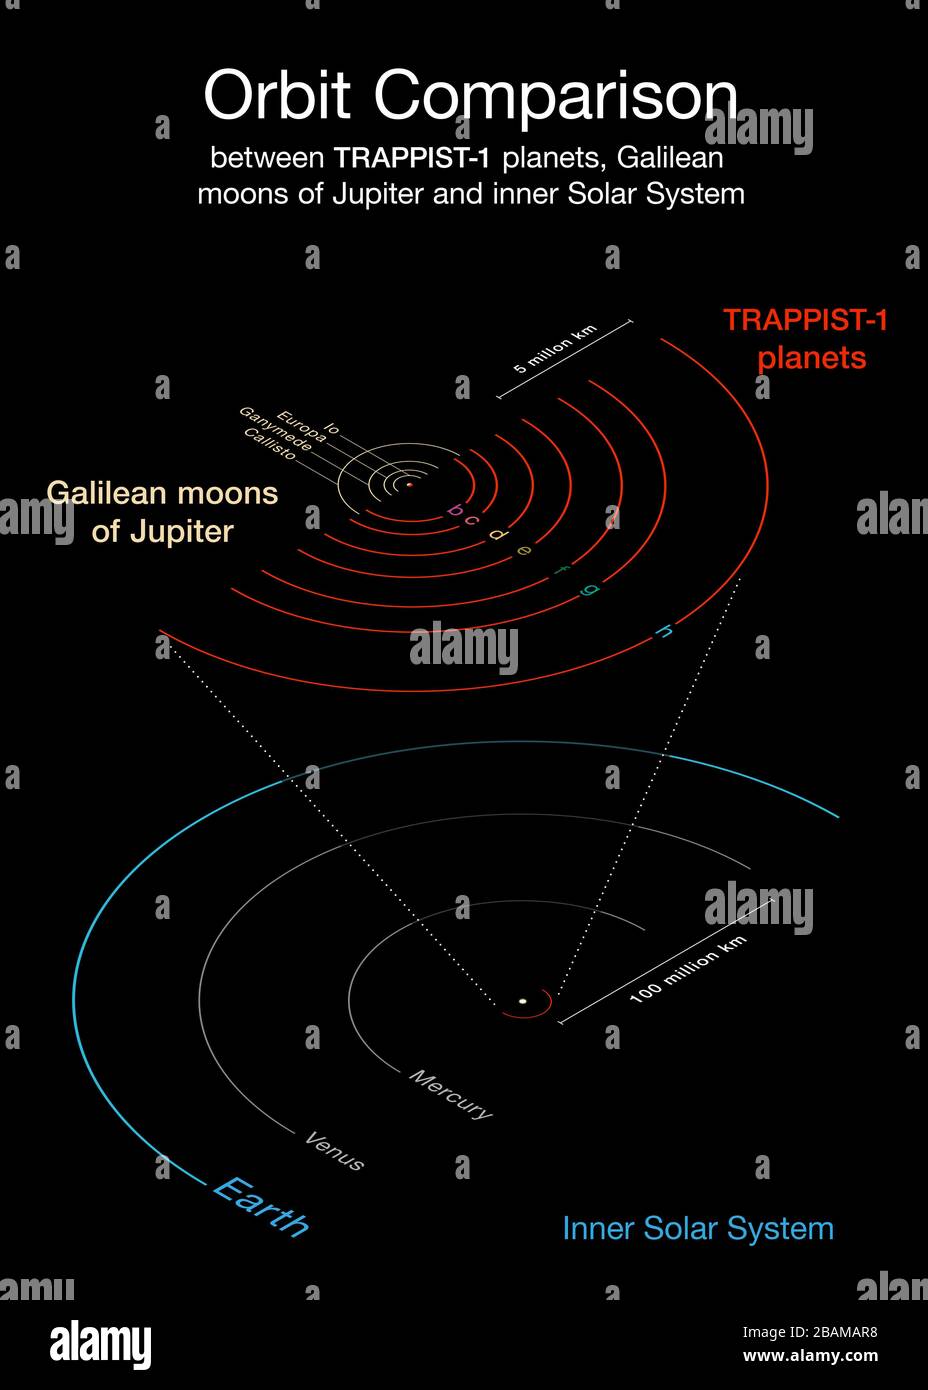 'Inglés: Este diagrama compara las órbitas de los planetas recientemente descubiertos alrededor de la débil estrella roja TRAPPIST-1 con las lunas Galileas de Júpiter y el sistema Solar interno. Todos los planetas encontrados alrededor de la órbita TRAPPIST-1 mucho más cerca de su estrella que Mercurio es al Sol, pero como su estrella es mucho más débil, están expuestos a niveles similares de irradiación como Venus, Tierra y Marte en el sistema Solar.; 22 de febrero de 2017, 19:00:00; http://www.eso.org/public/images/eso1706b/; eso/O. Furtak; ' Foto de stock